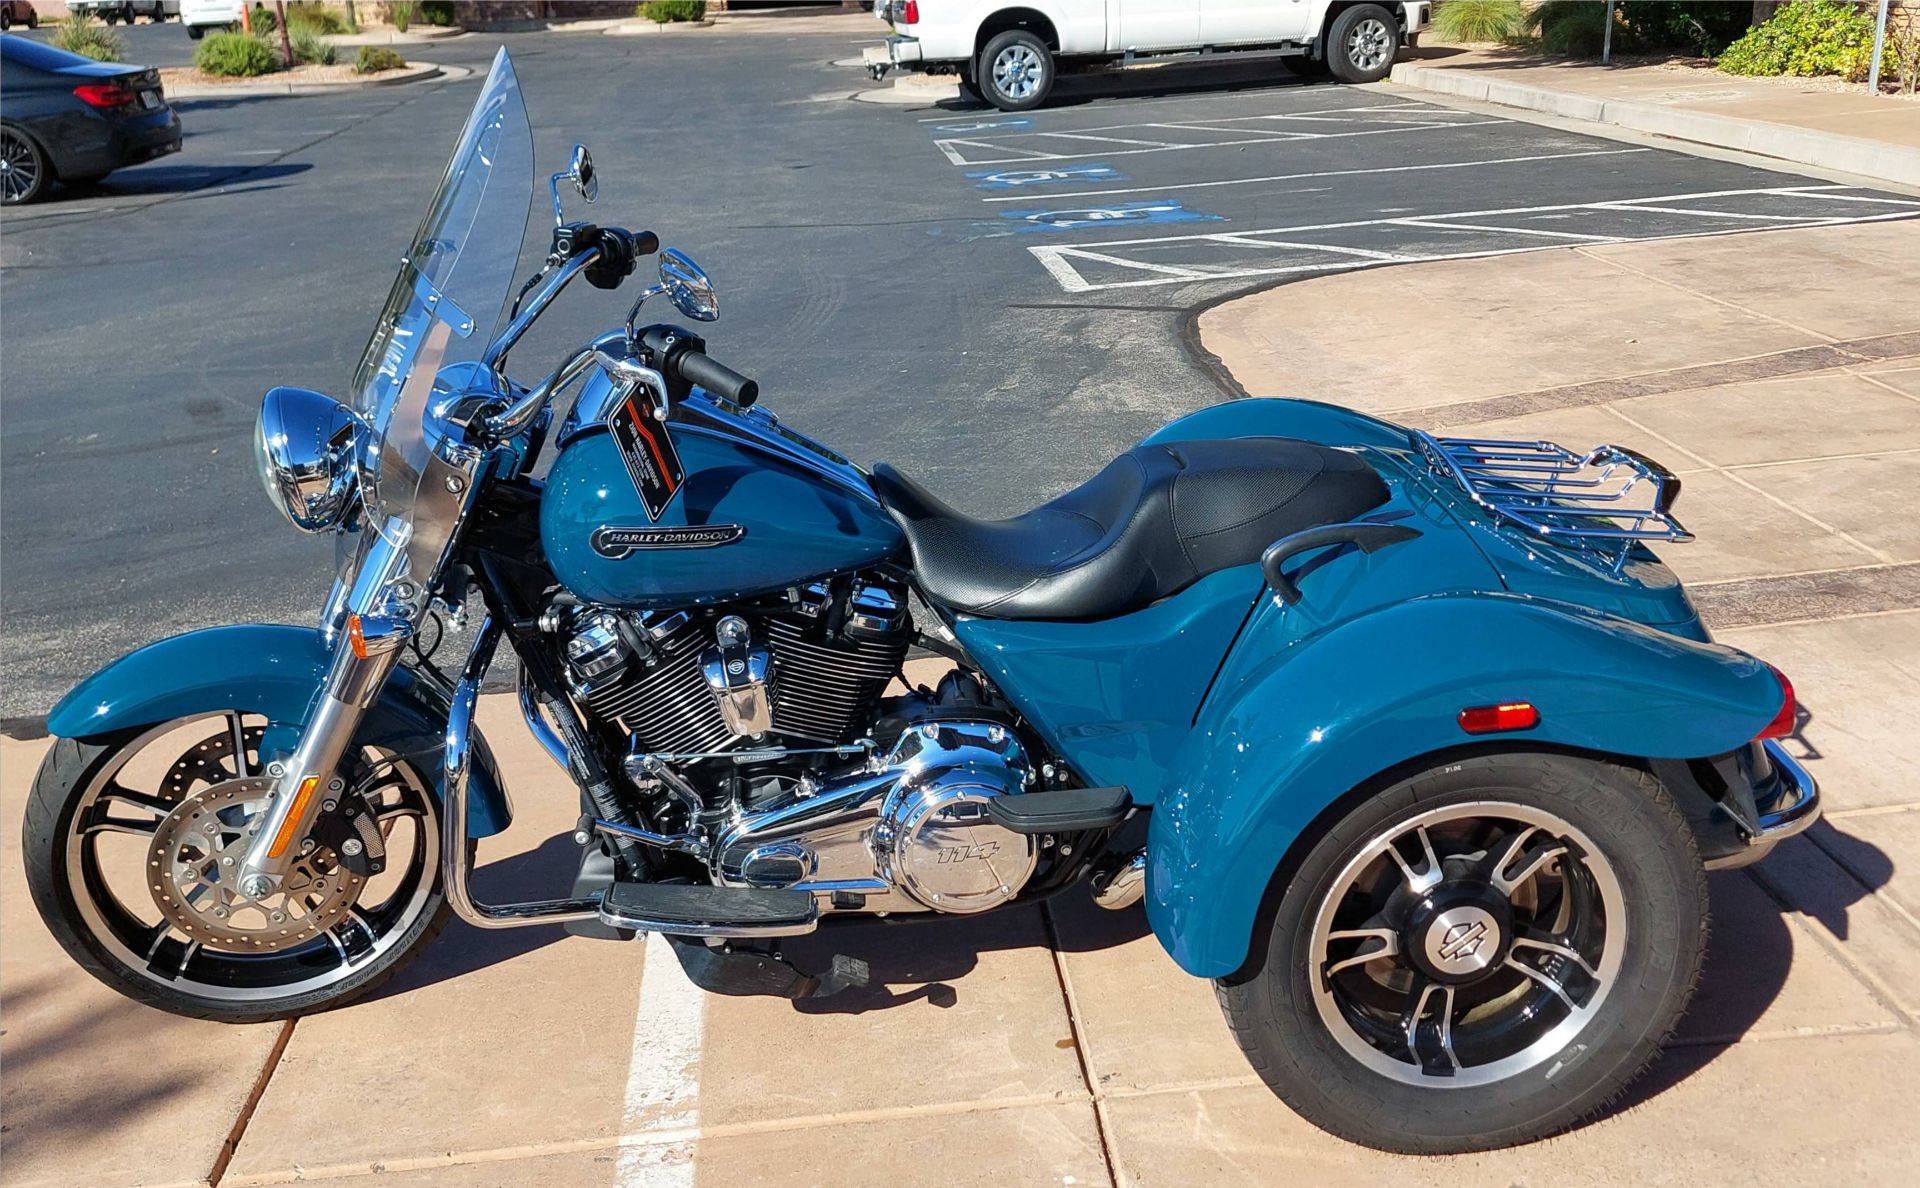 2021 Harley-Davidson Freewheeler® in Washington, Utah - Photo 6